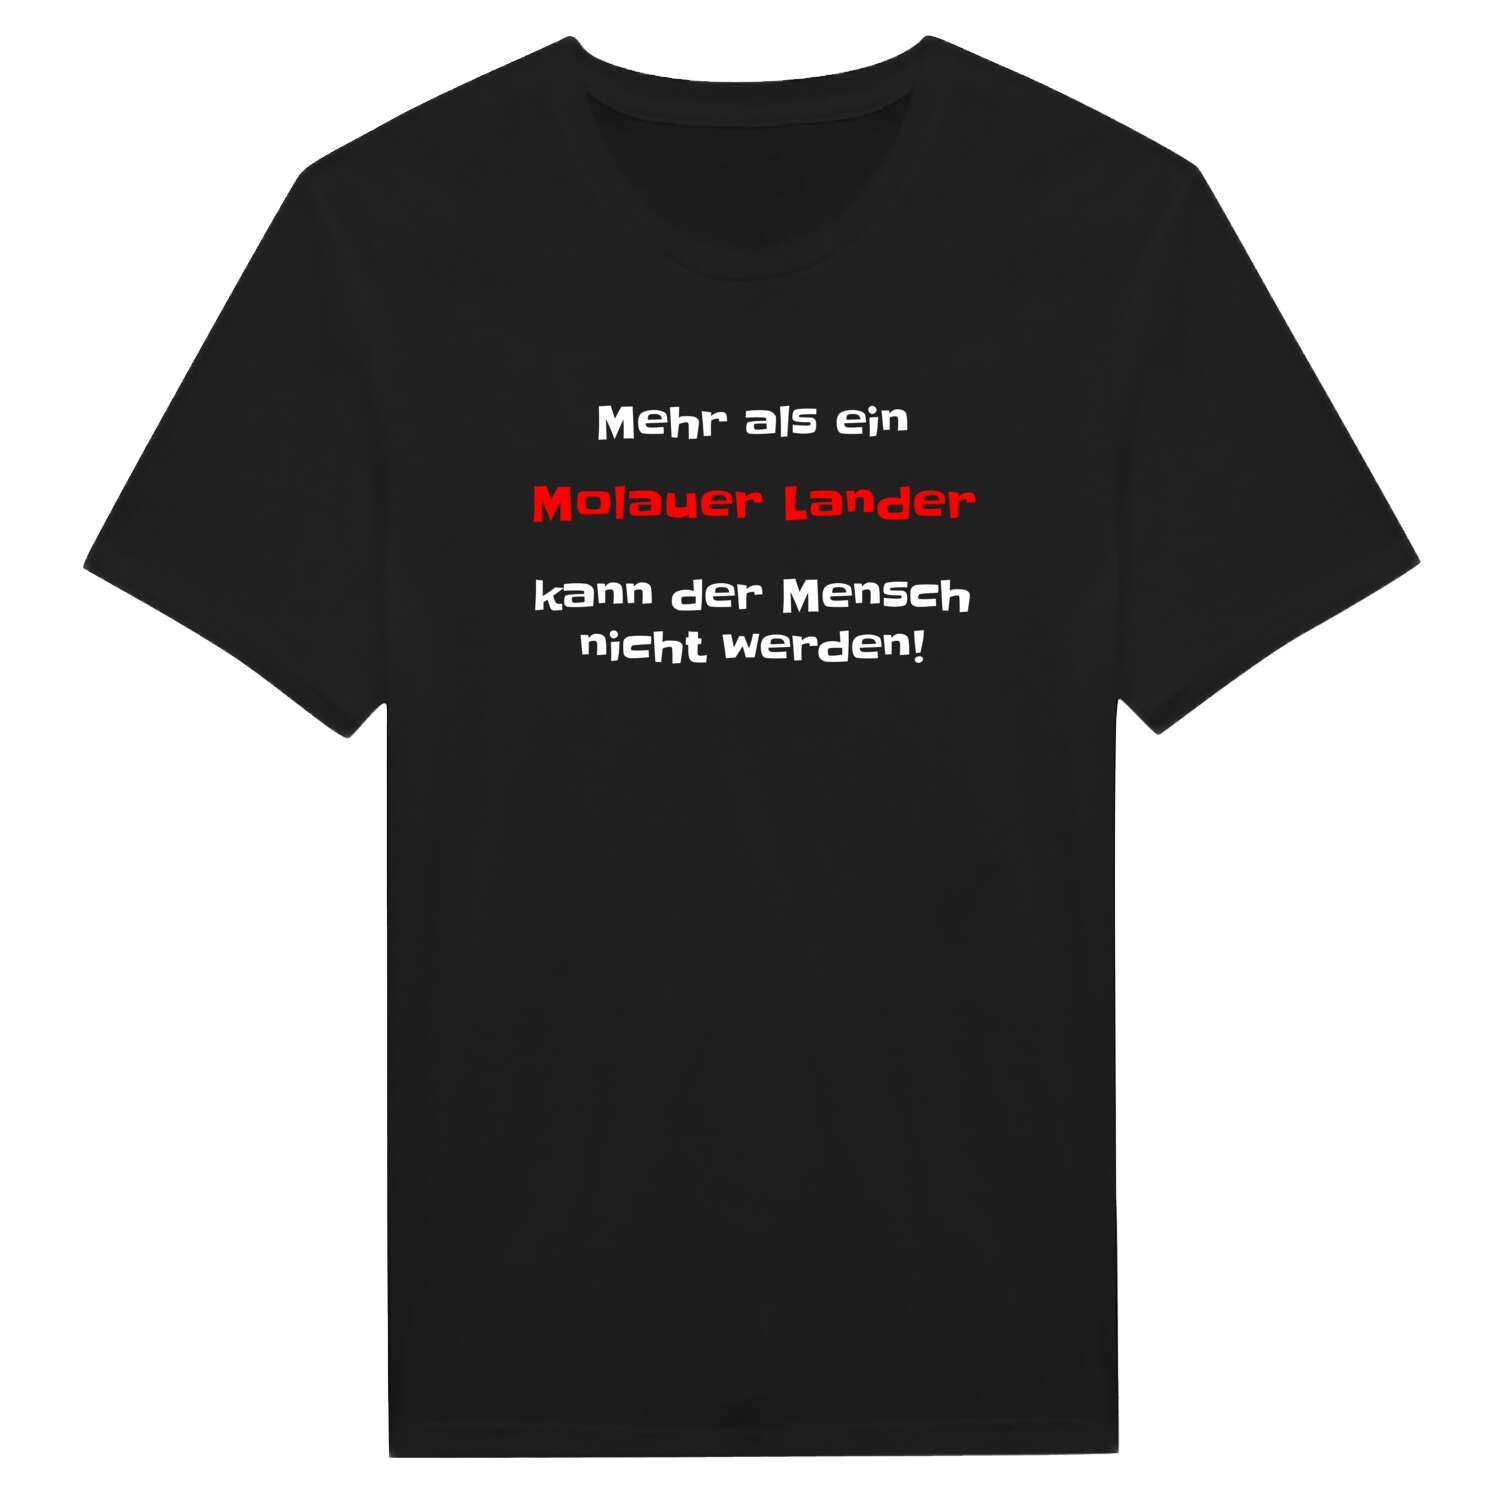 Molauer Land T-Shirt »Mehr als ein«